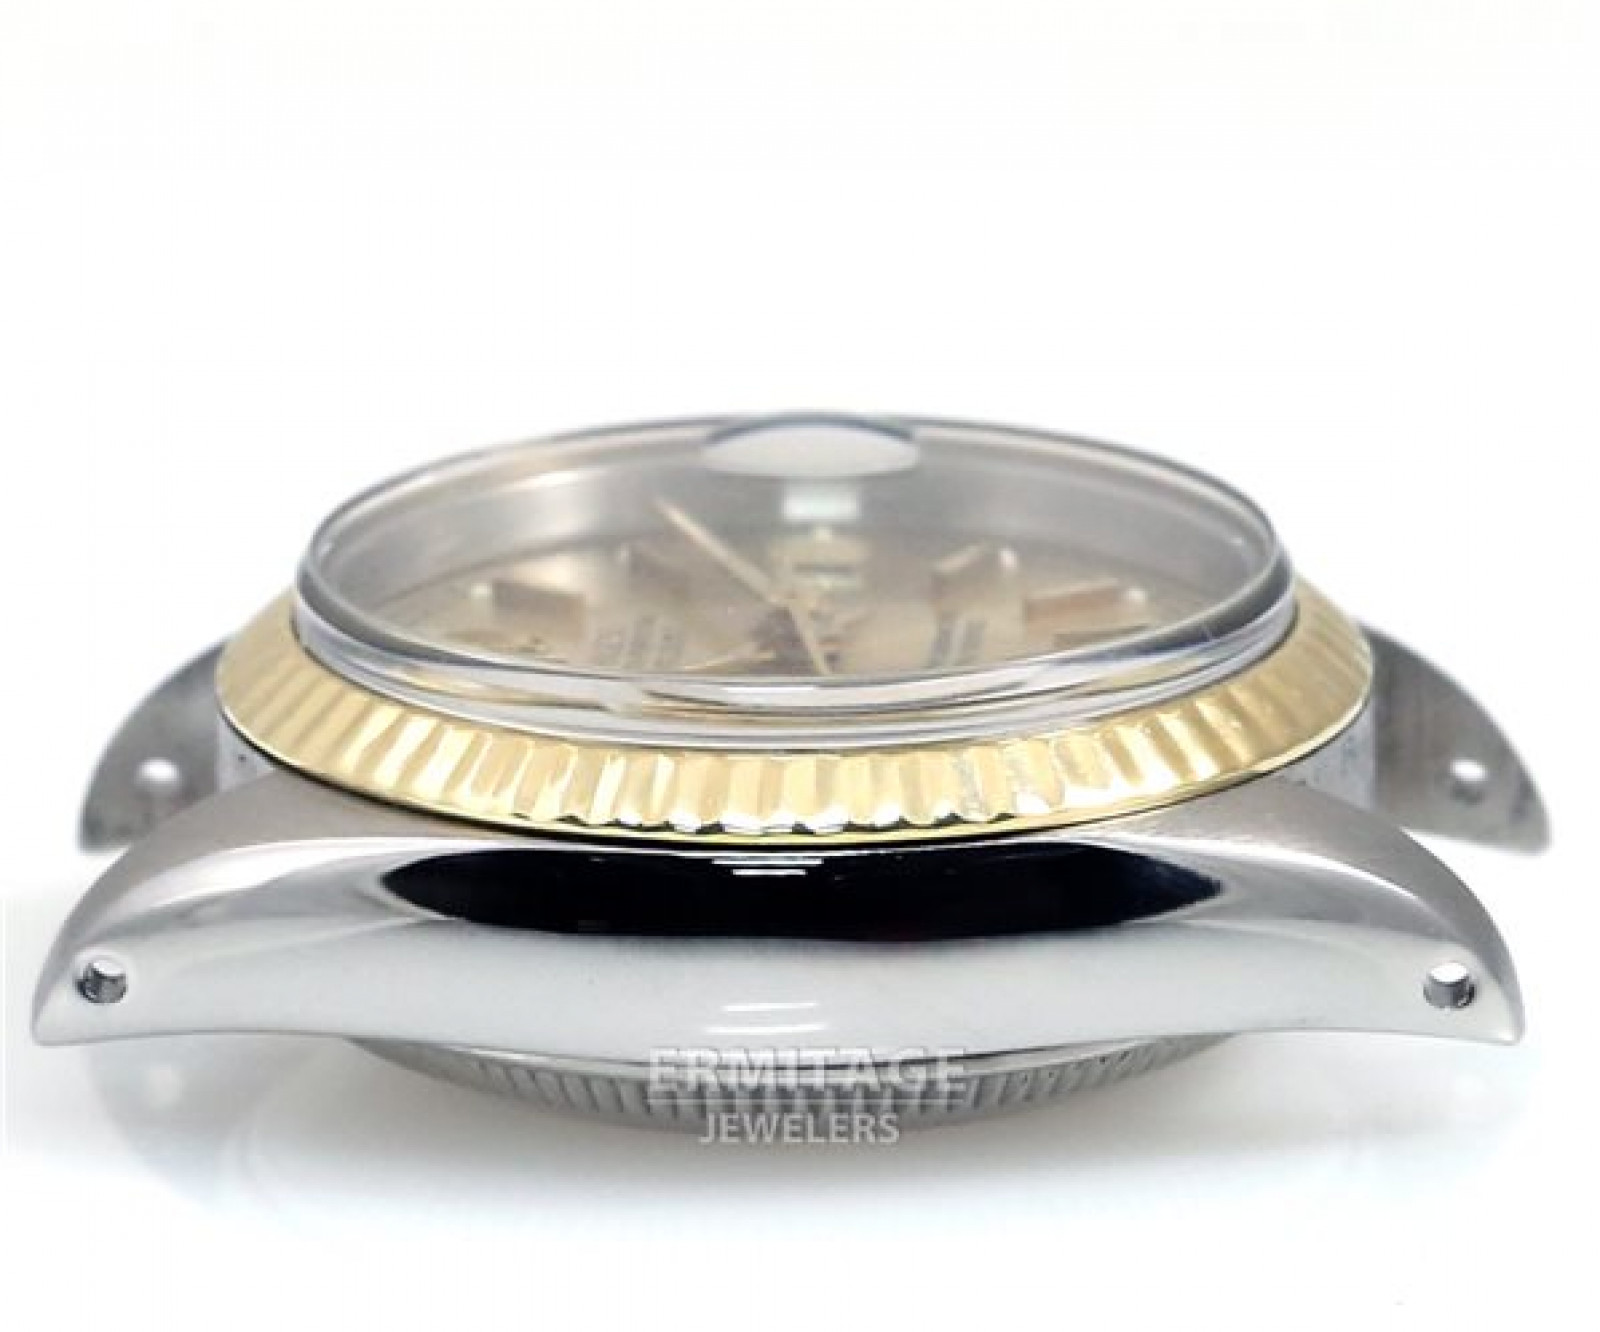 Vintage Rolex Datejust 6917 Gold & Steel